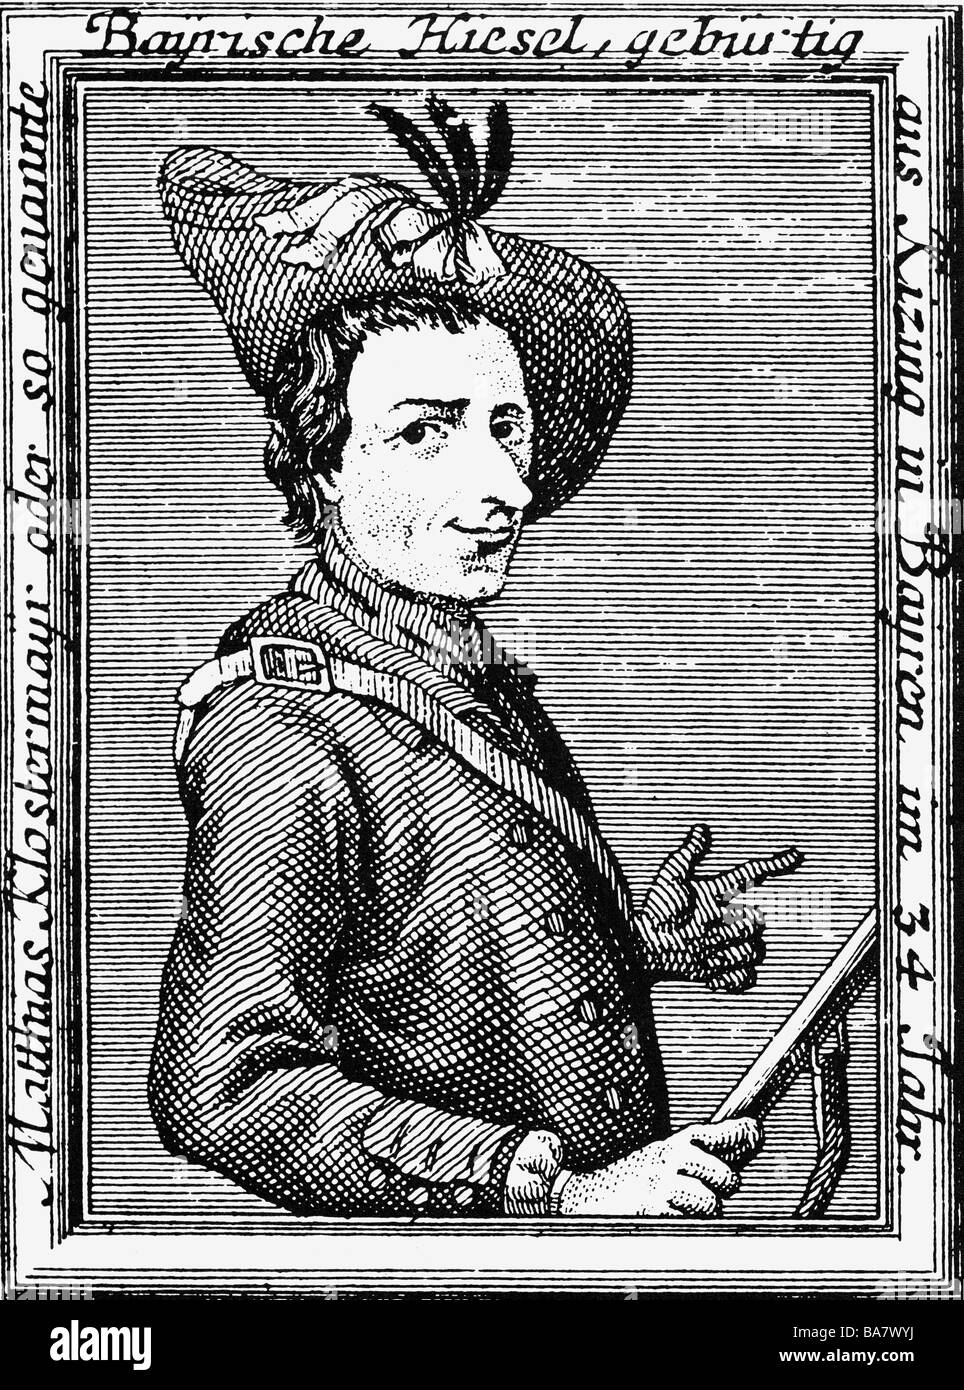 Matthias Klostermayr, 3.9.1738 - 6.9.1771, conosciuto come 'Bavarian Hiasl', fuorilegge tedesca, a mezza lunghezza, incisione, Foto Stock